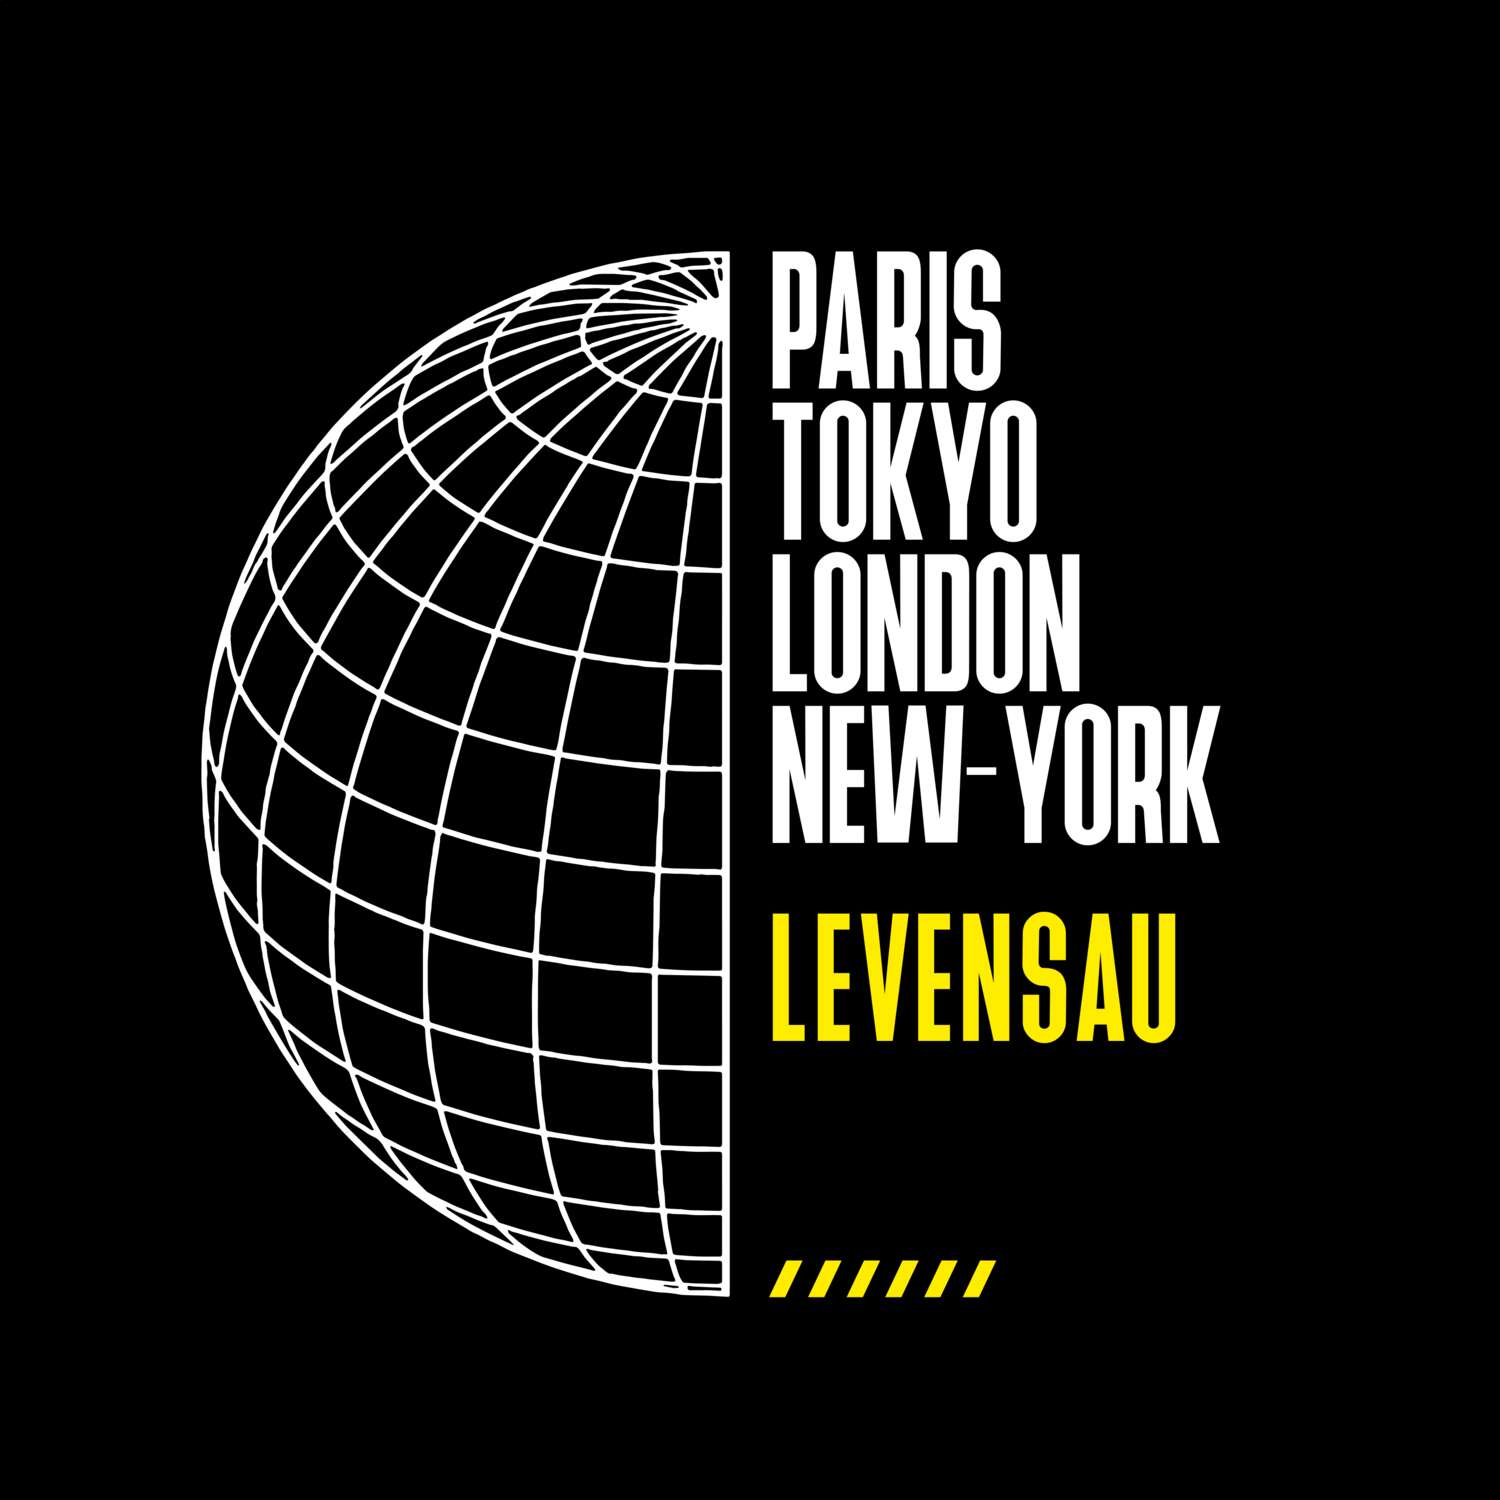 Levensau T-Shirt »Paris Tokyo London«